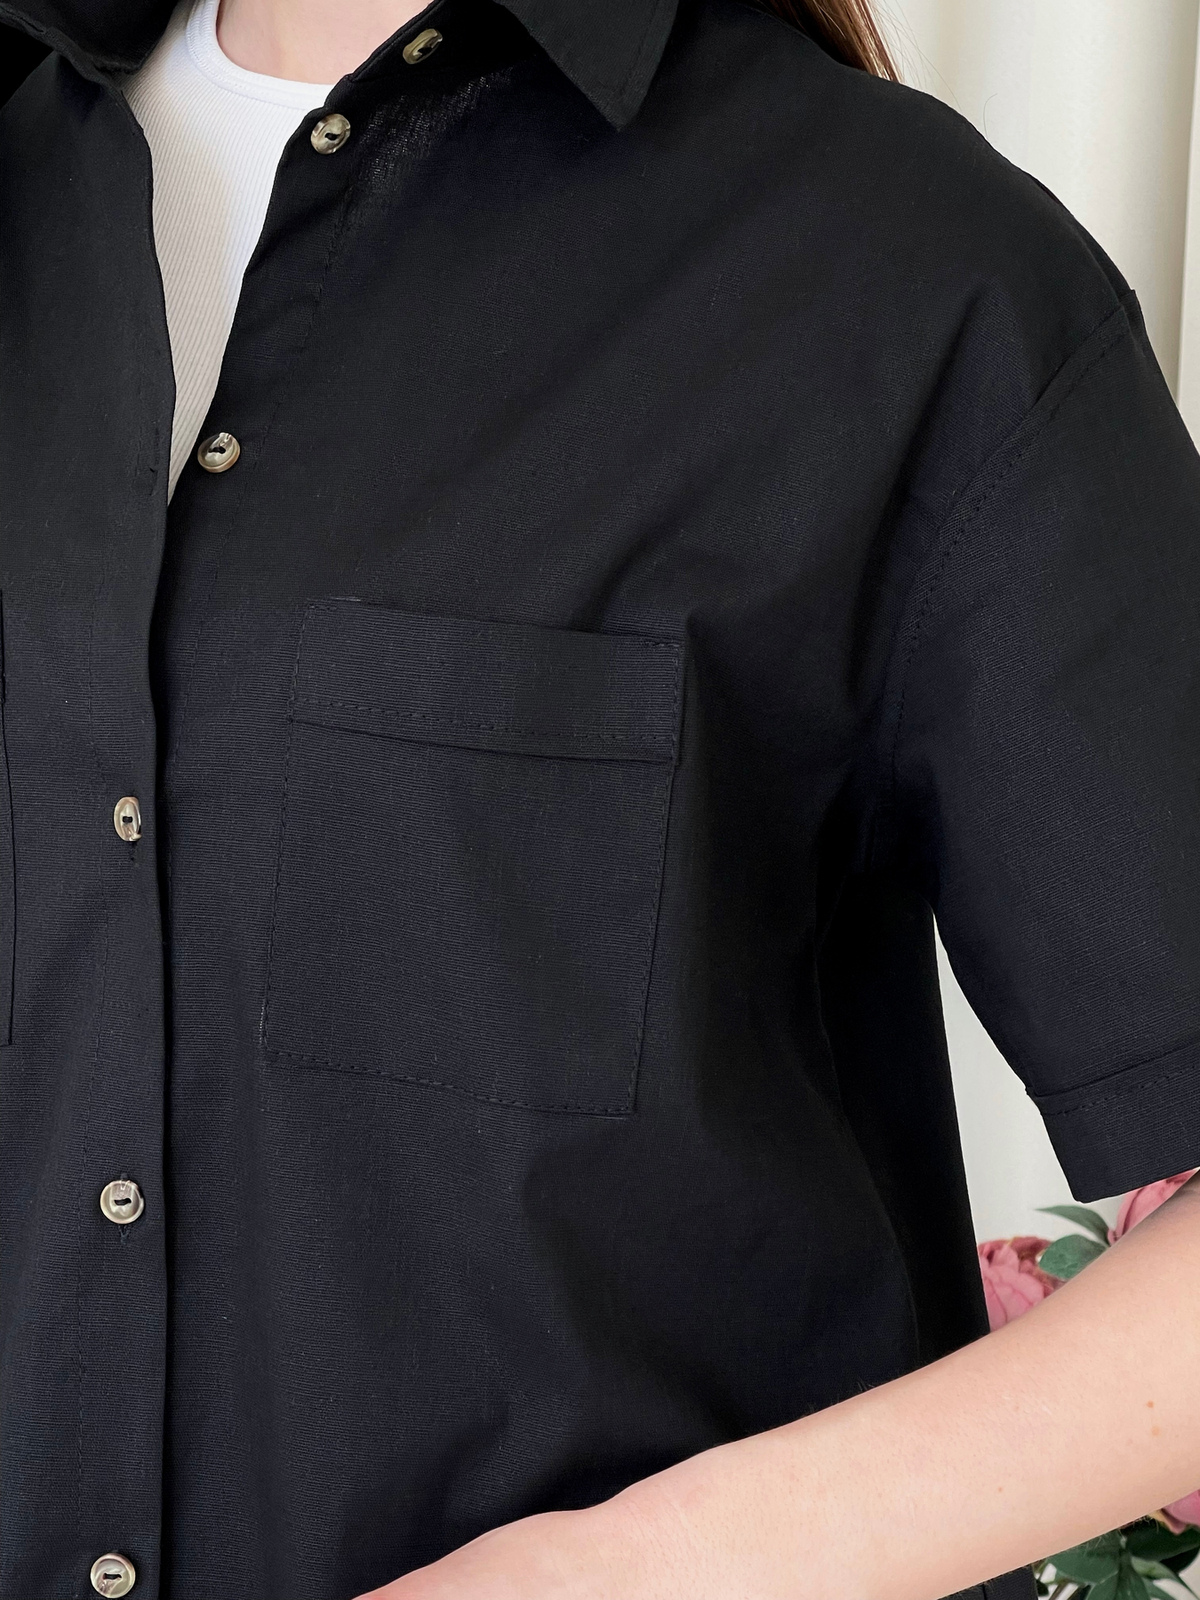 Купить Льняная рубашка с коротким рукавом черная Merlini Нино 200001201 размер 42-44 (S-M) в интернет-магазине